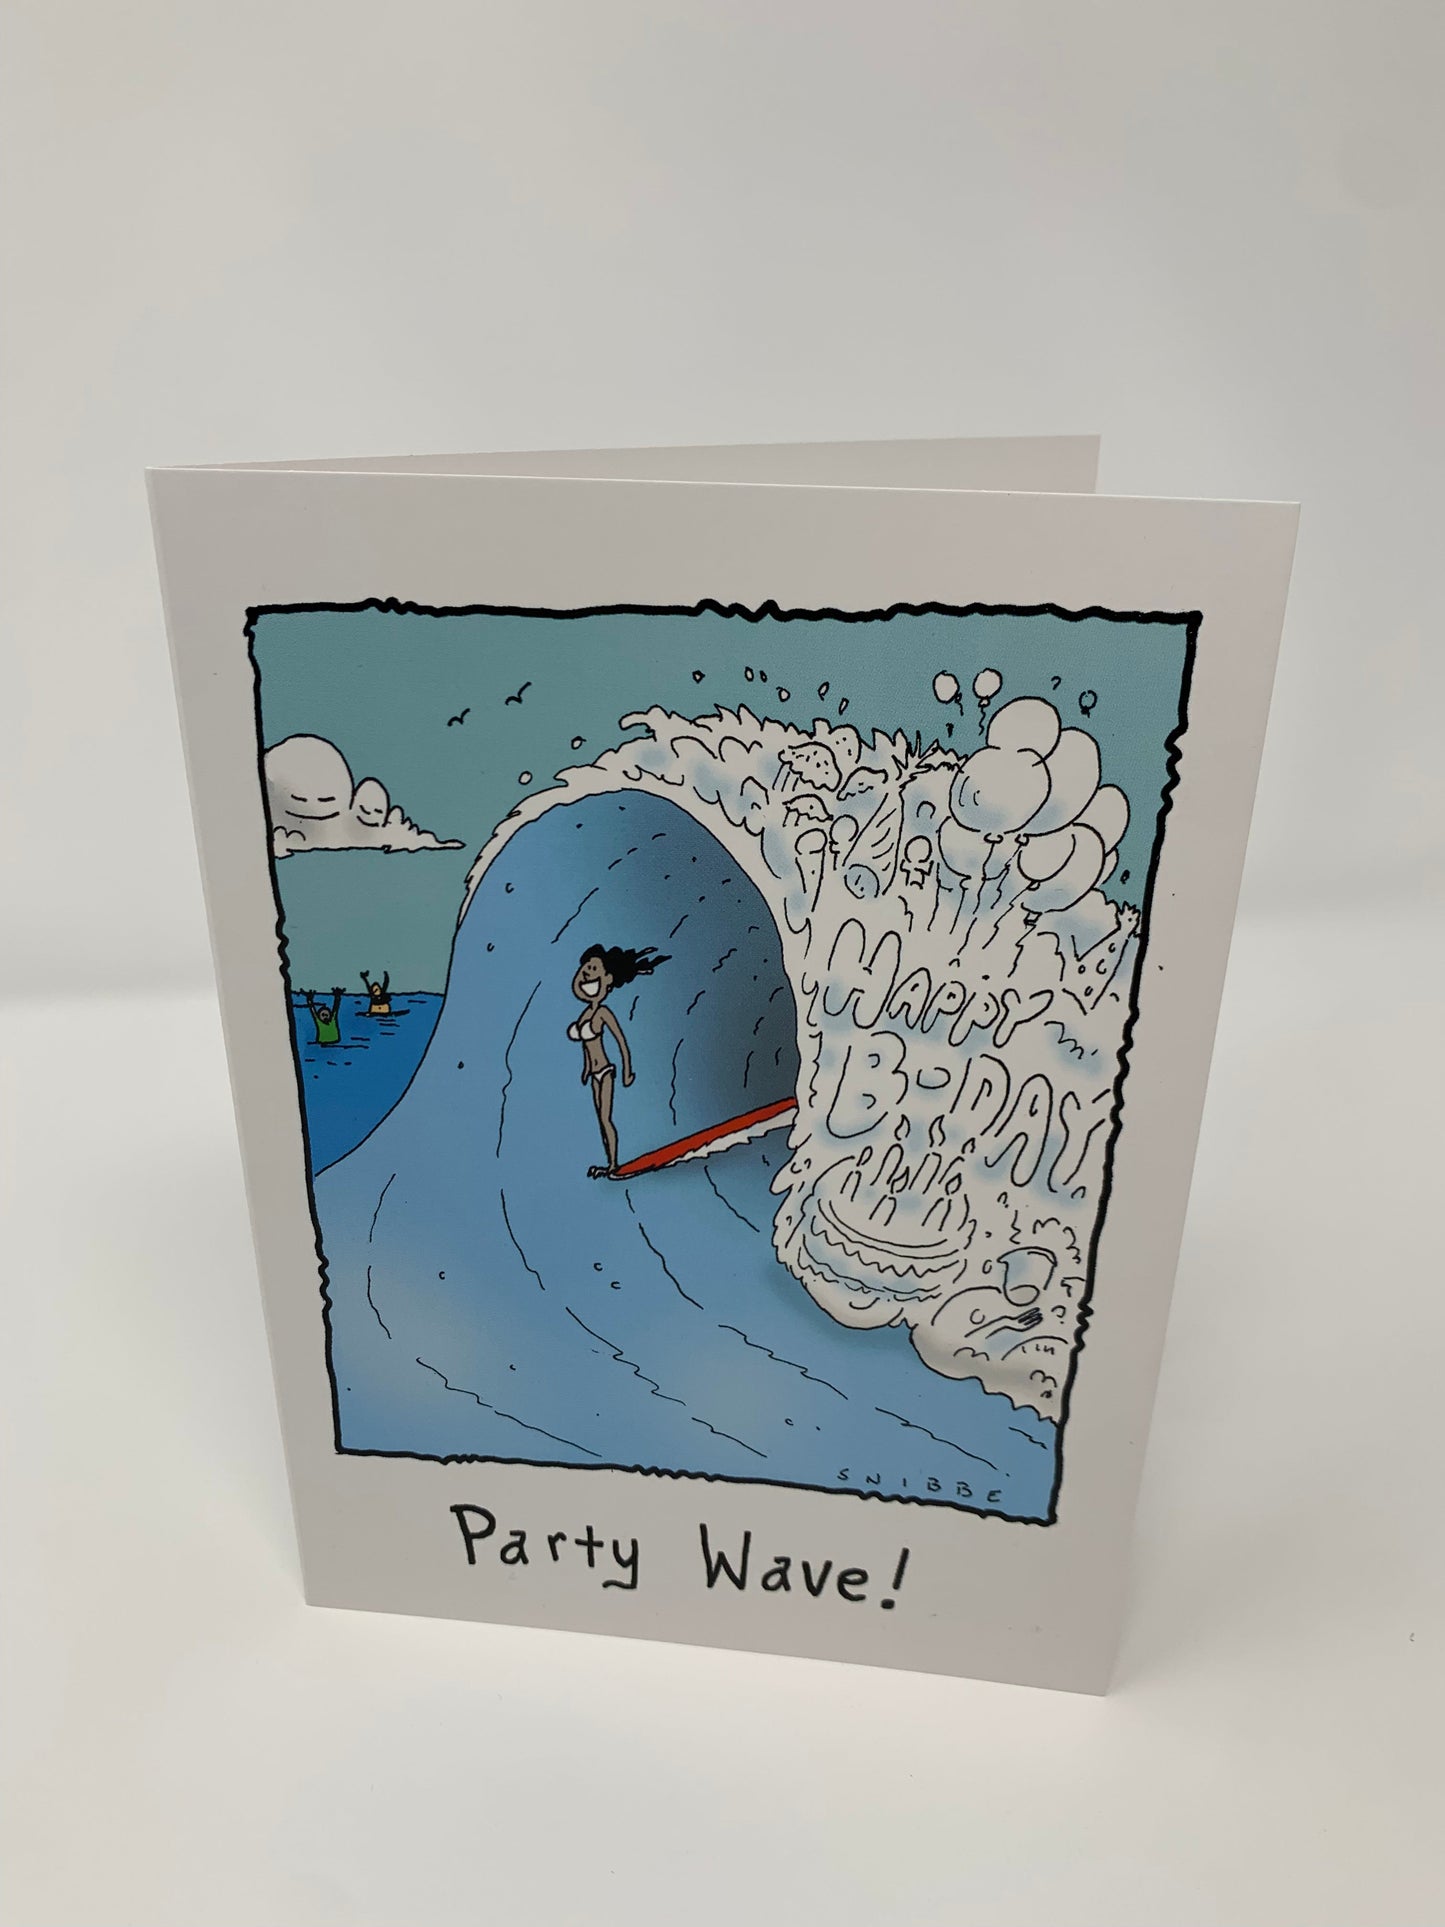 Party Wave! - wholesale